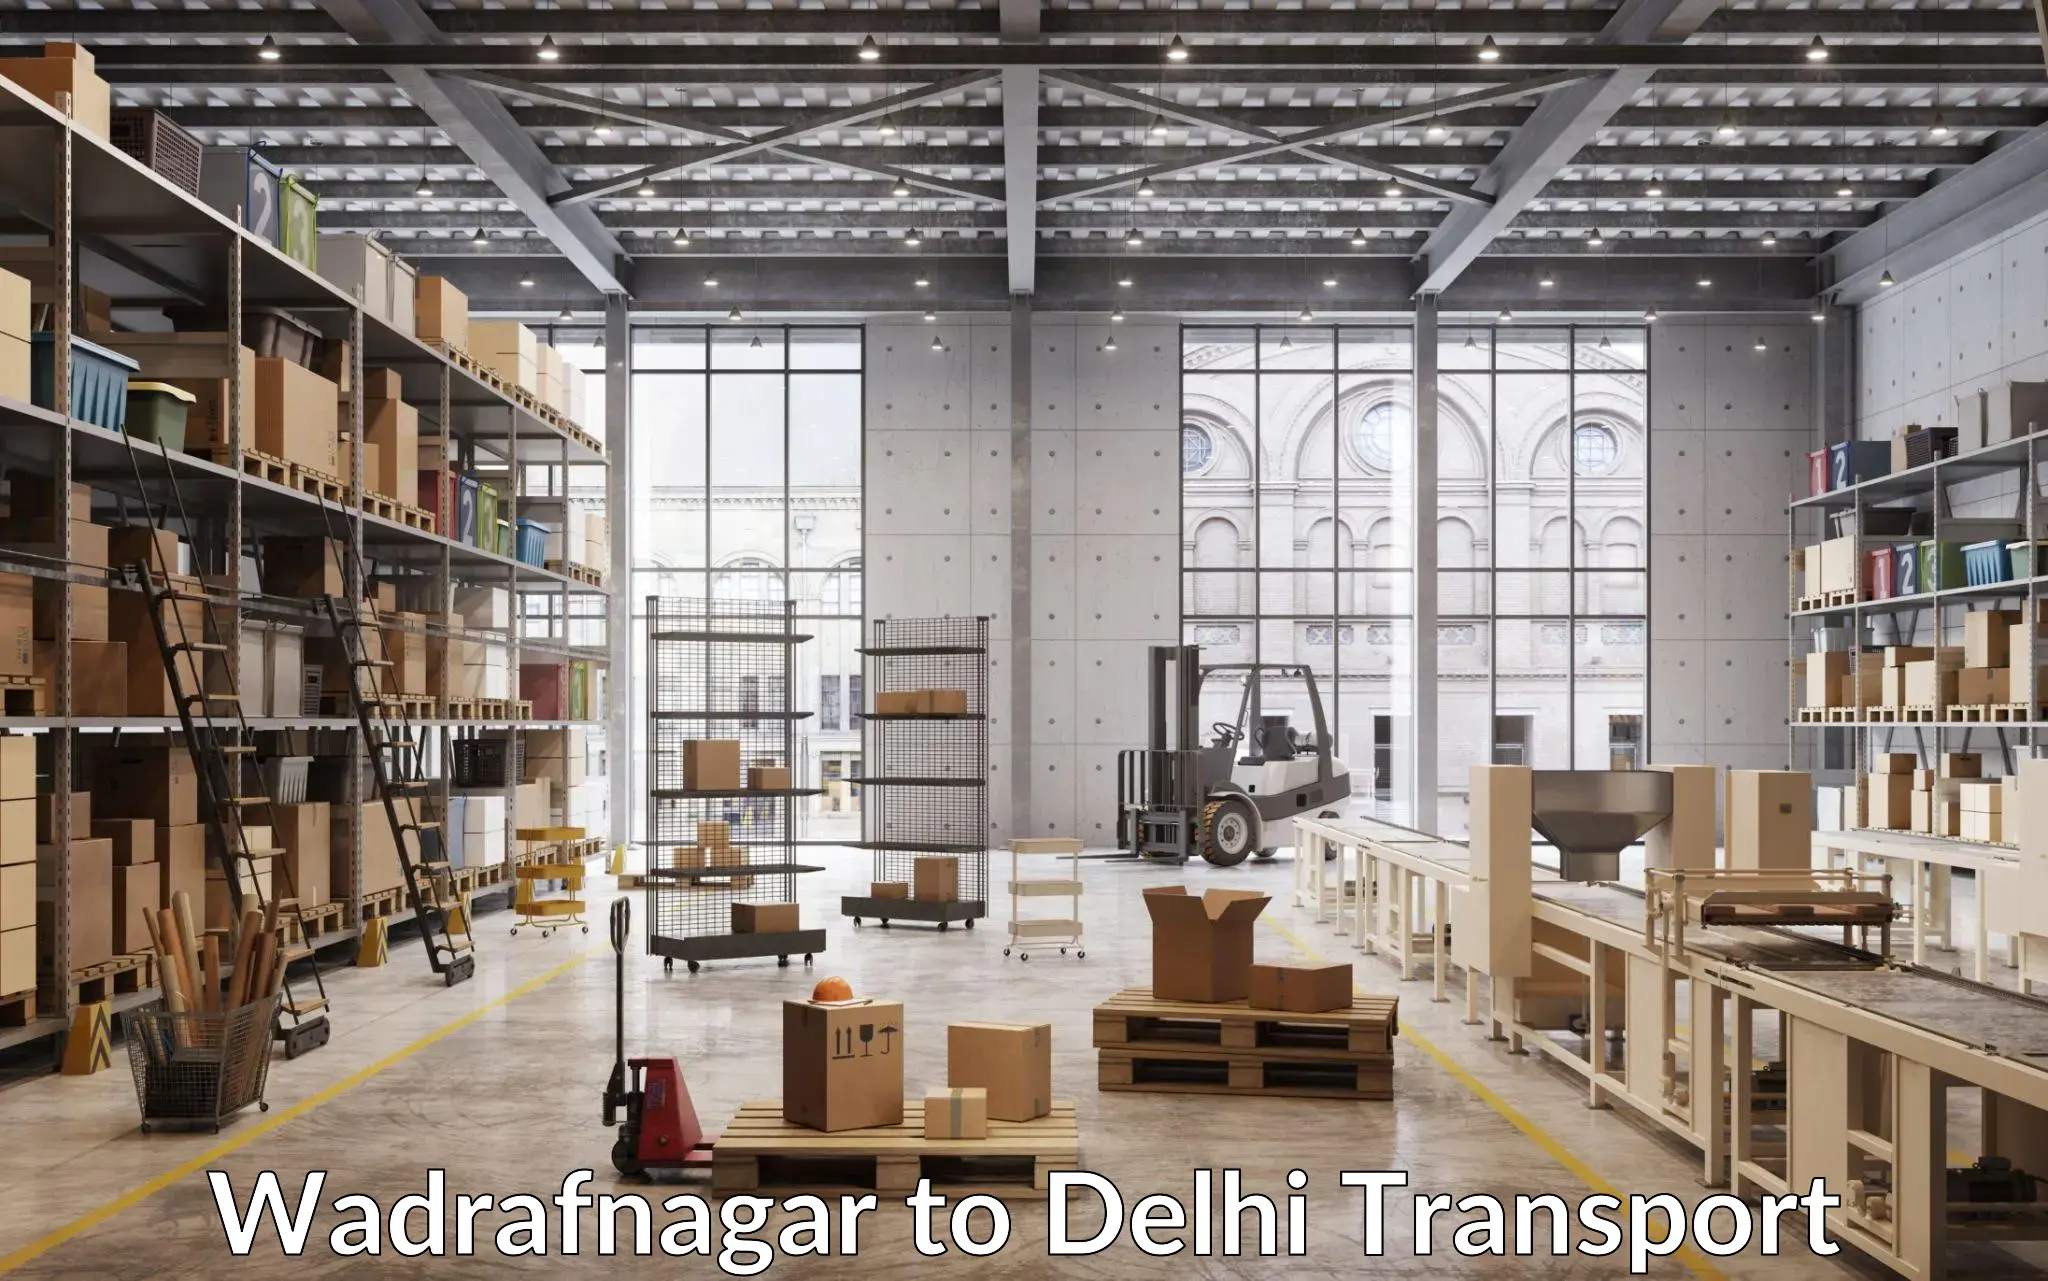 Cargo transportation services Wadrafnagar to East Delhi